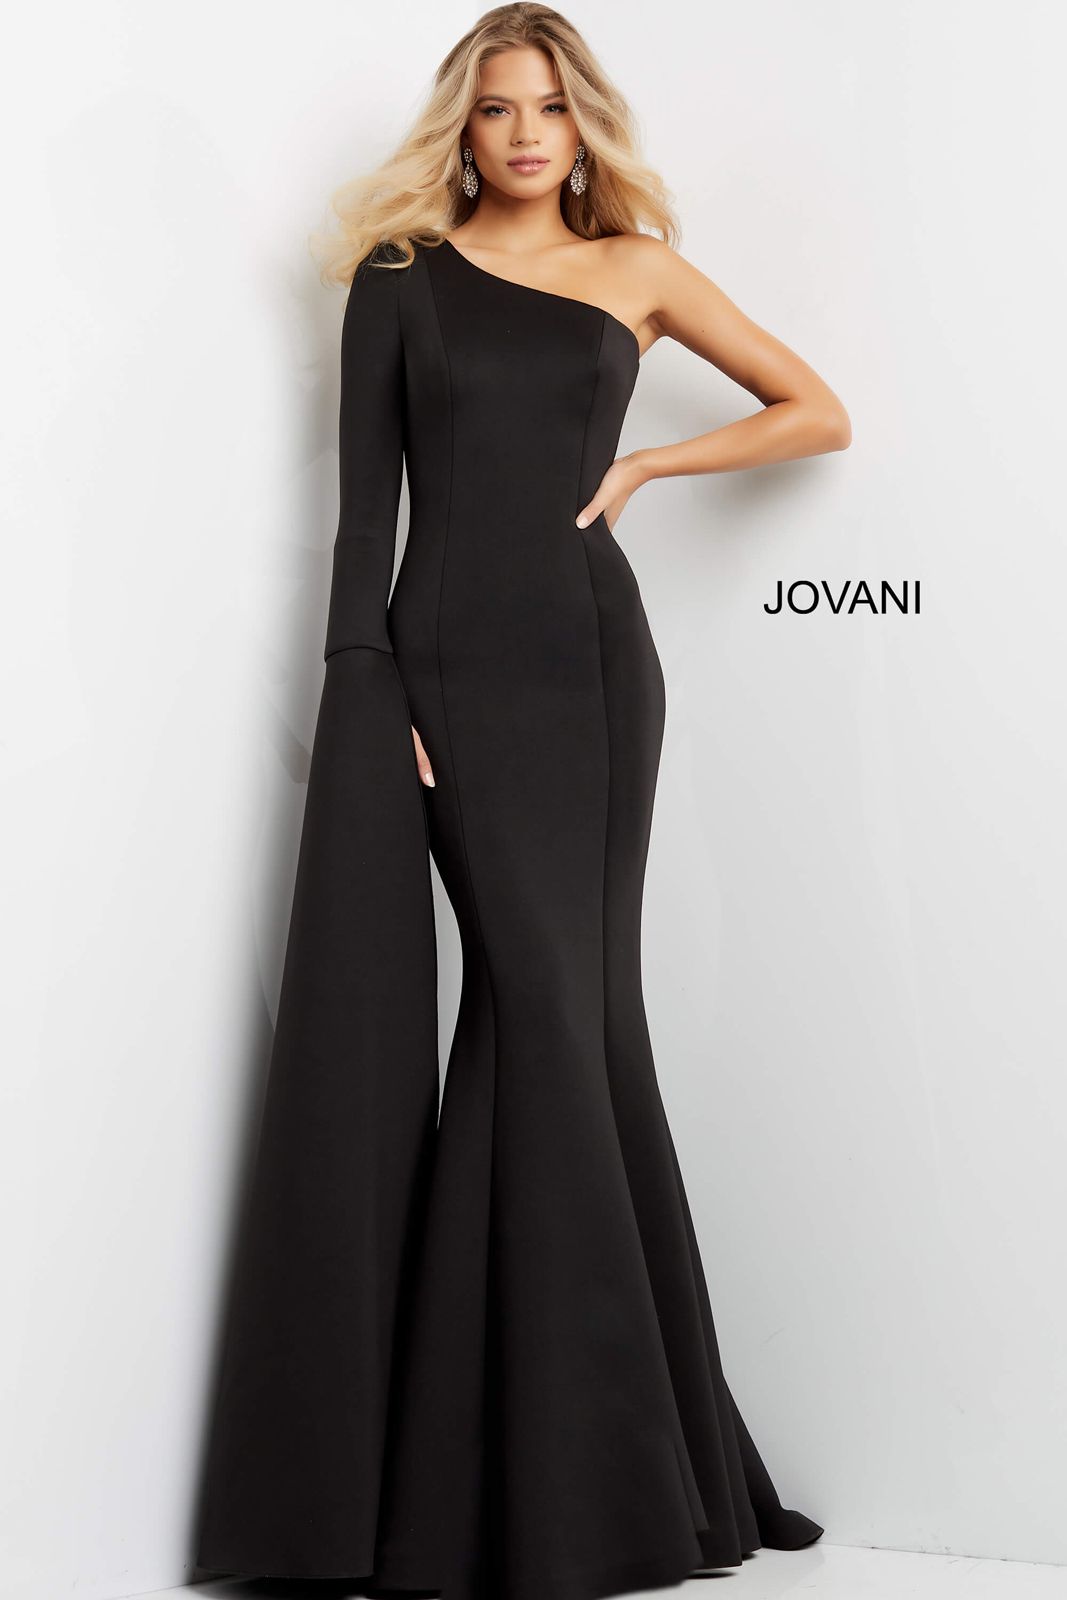 Jovani 07128 Long Sleeve One Shoulder Dress 